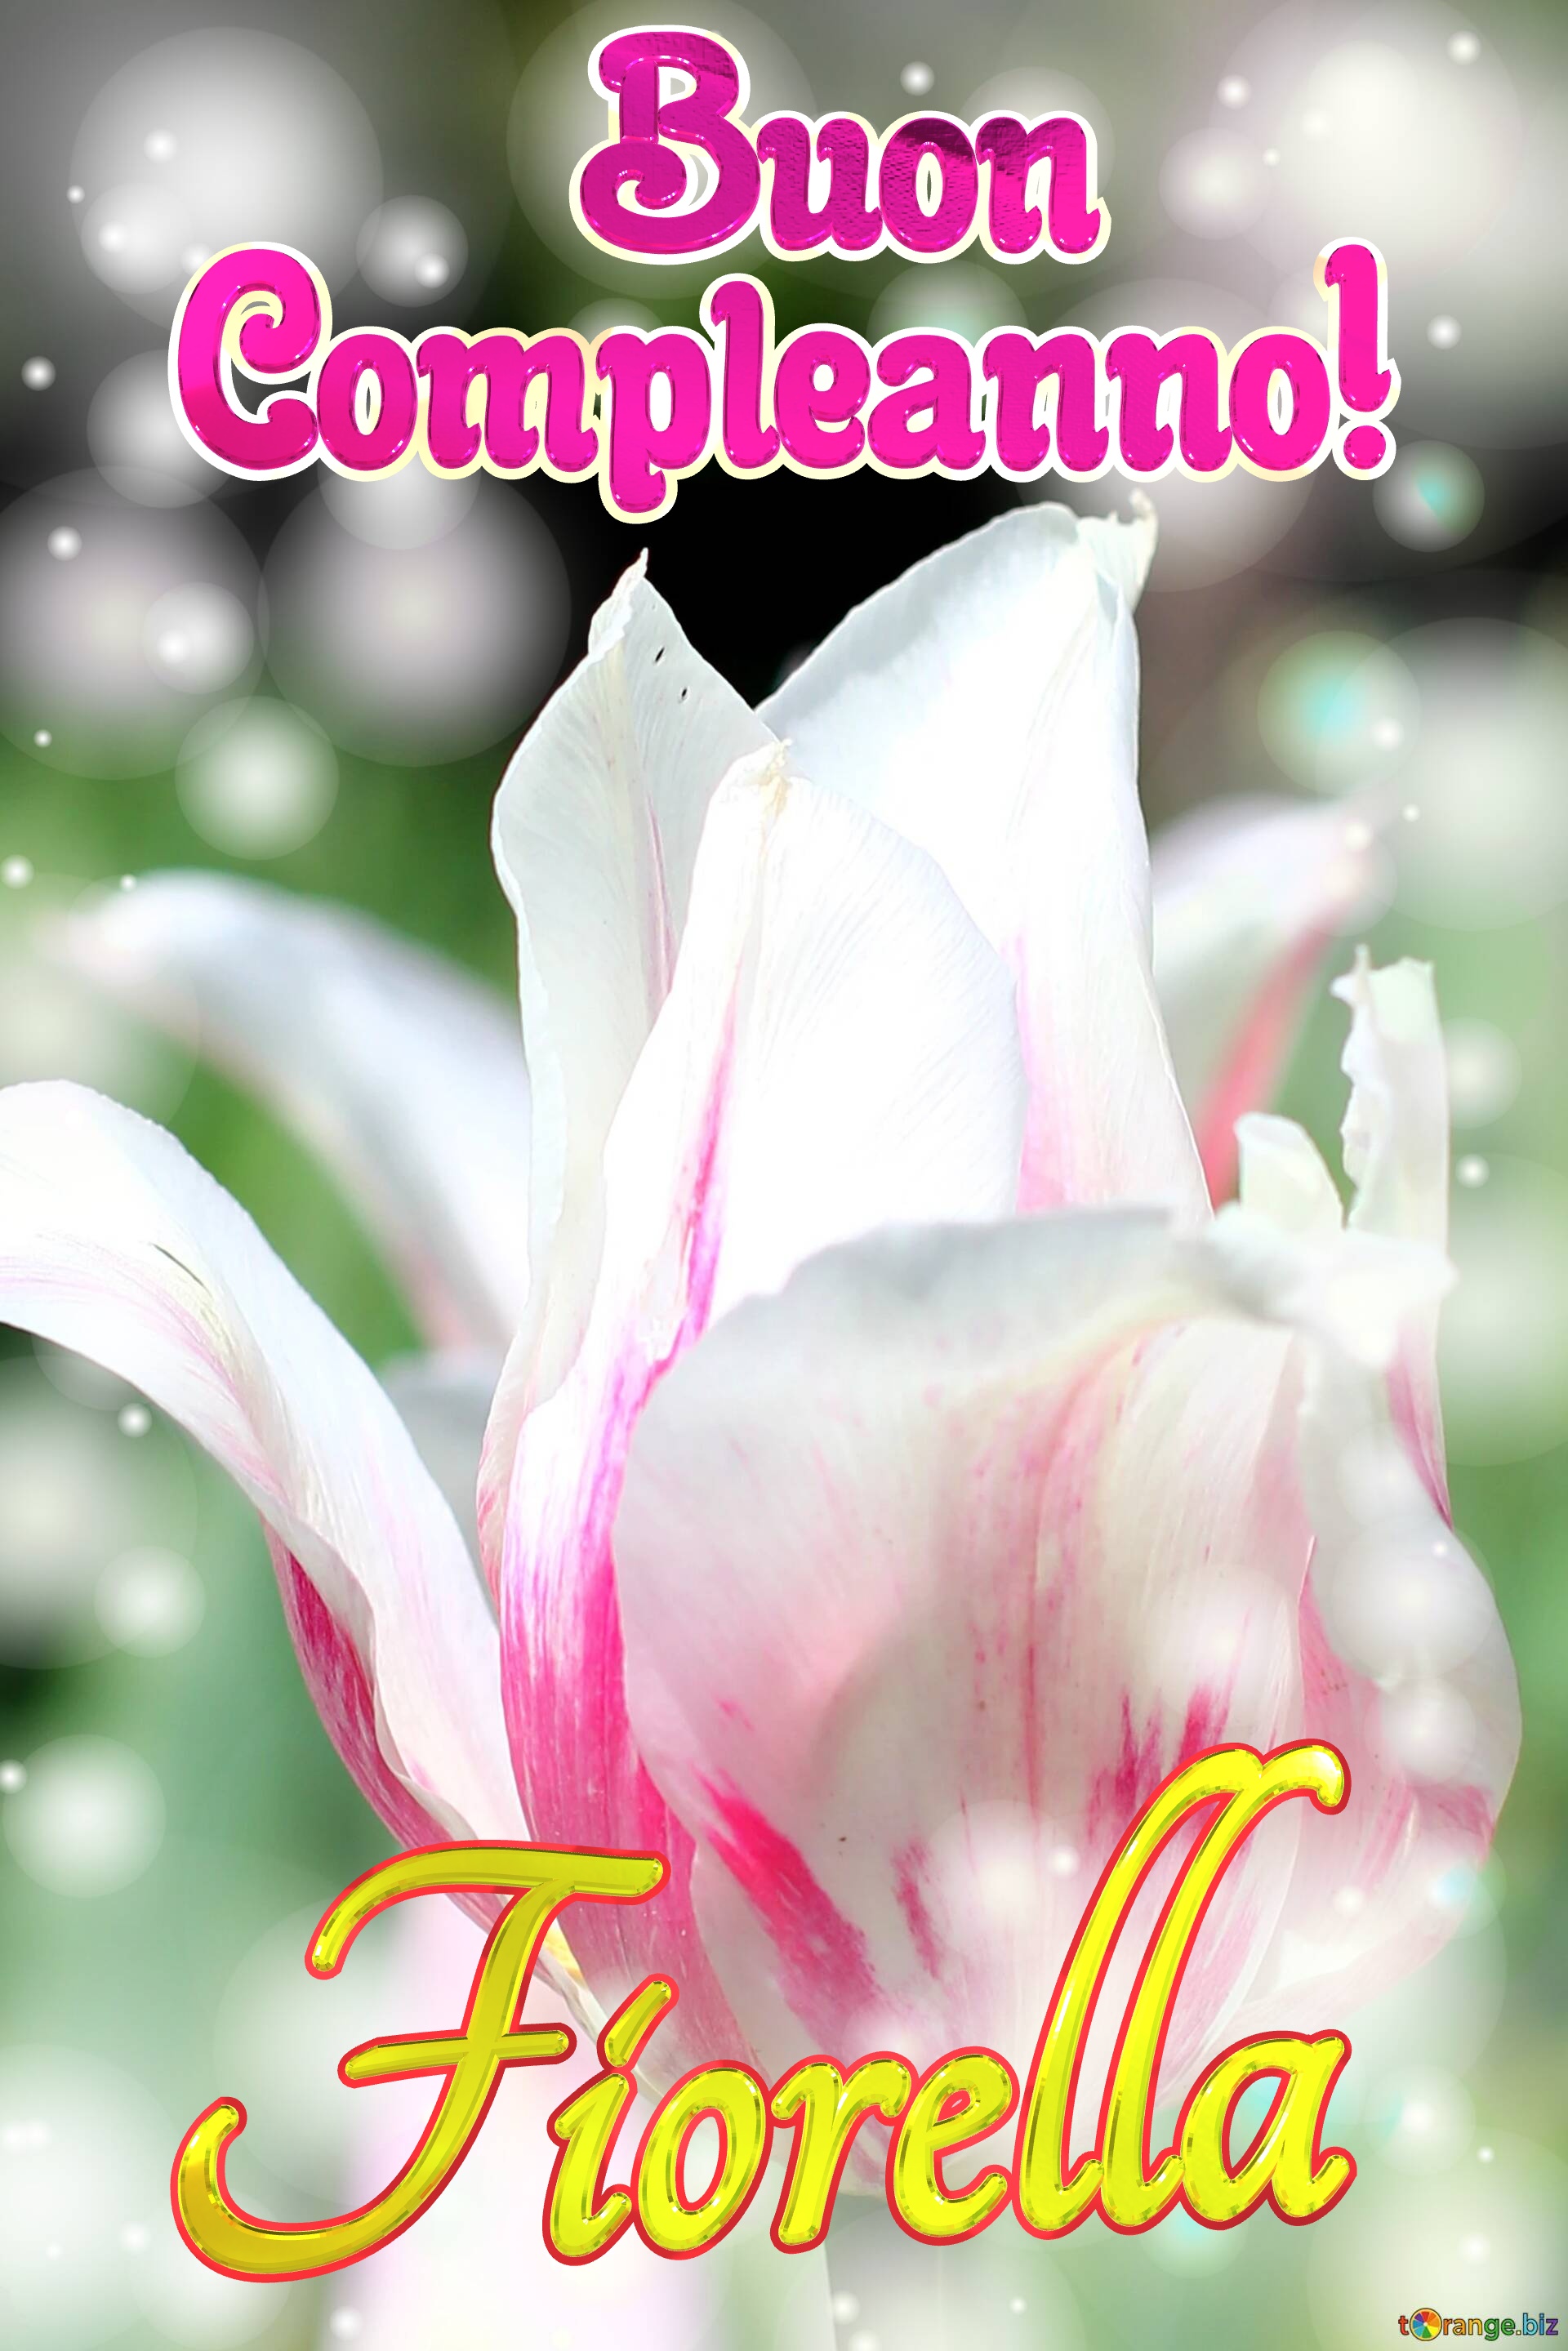       Buon  Compleanno! Fiorella  Buona primavera con questi bellissimi tulipani! №0